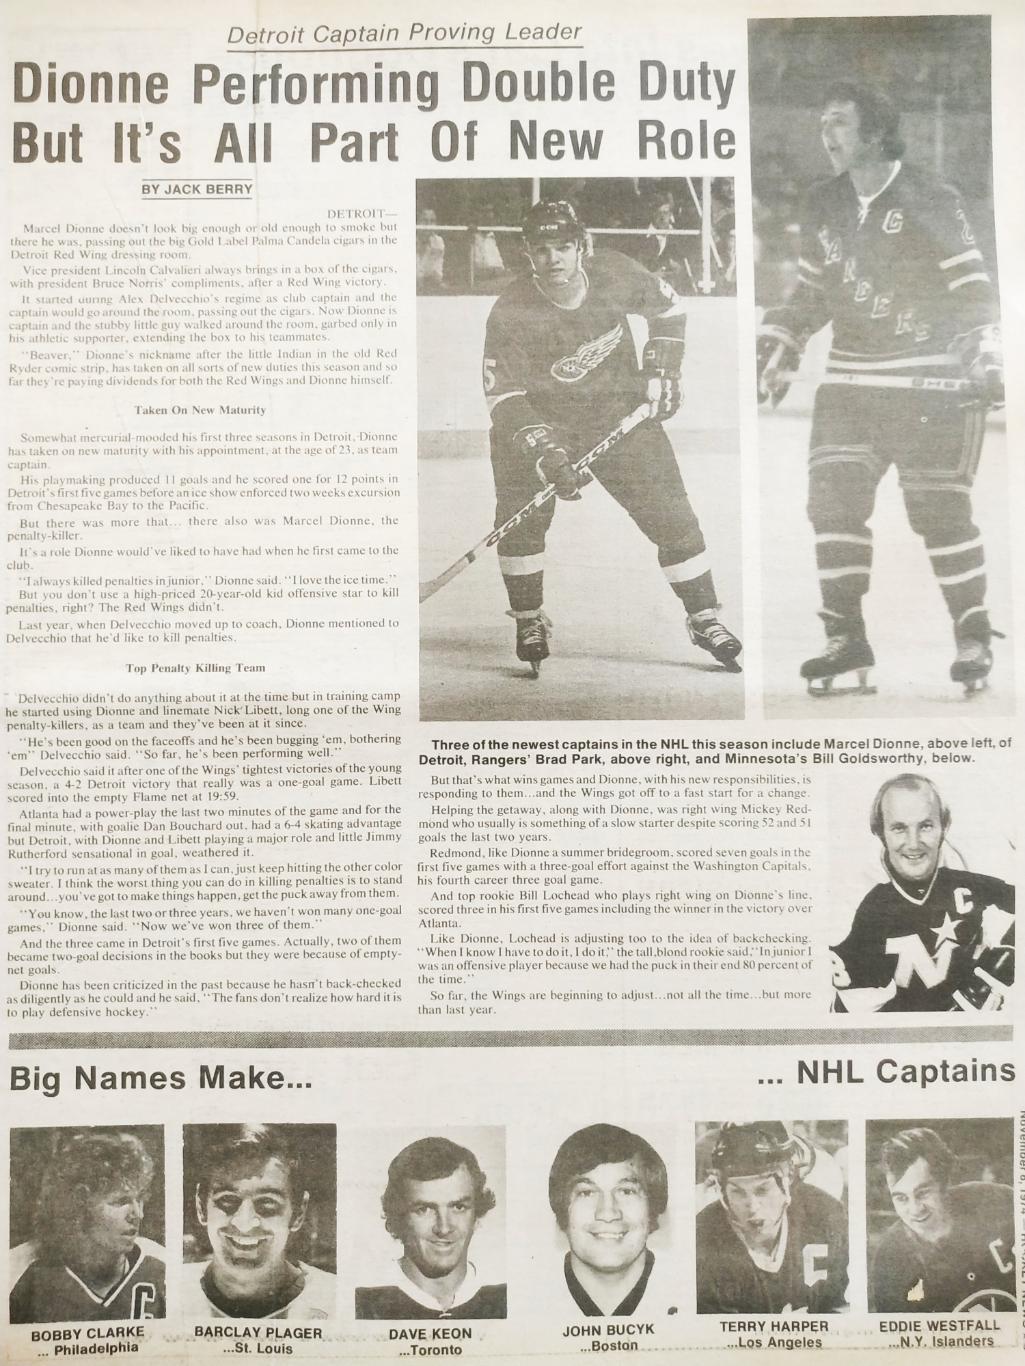 ХОККЕЙ ЖУРНАЛ ЕЖЕНЕДЕЛЬНИК НХЛ НОВОСТИ ХОККЕЯ NOV.8 1974 NHL THE HOCKEY NEWS 2